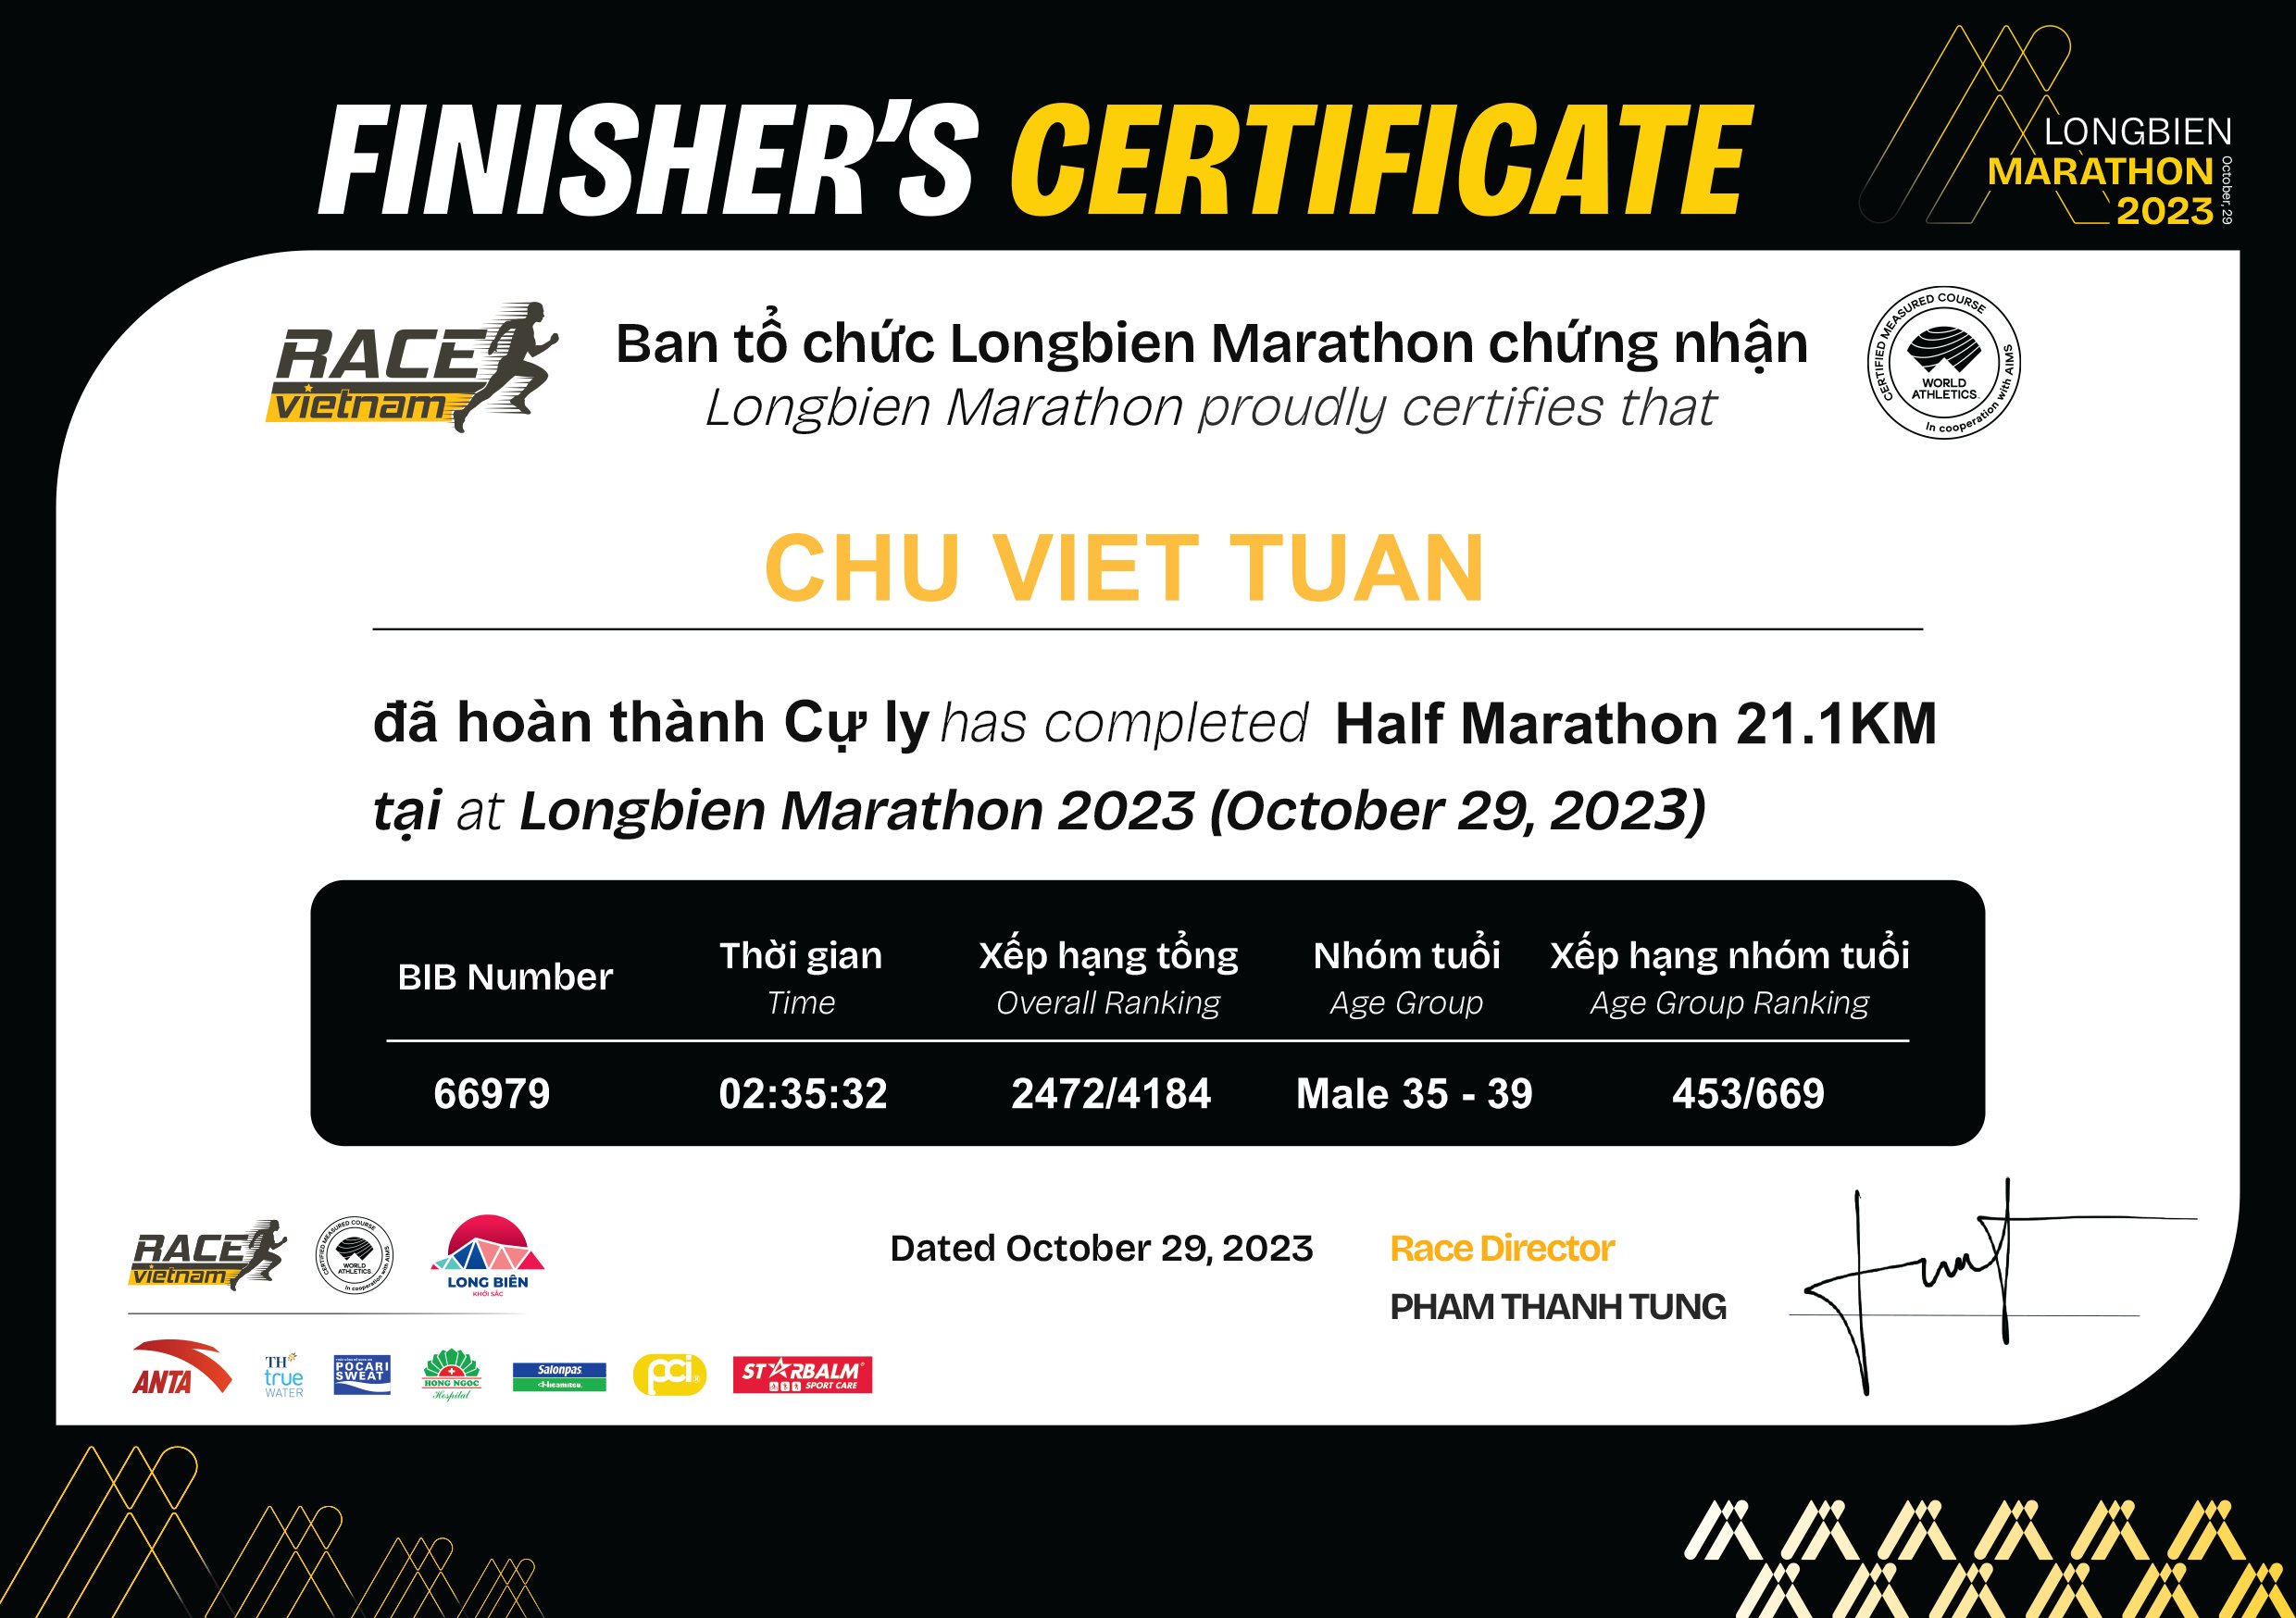 66979 - Chu Viet Tuan